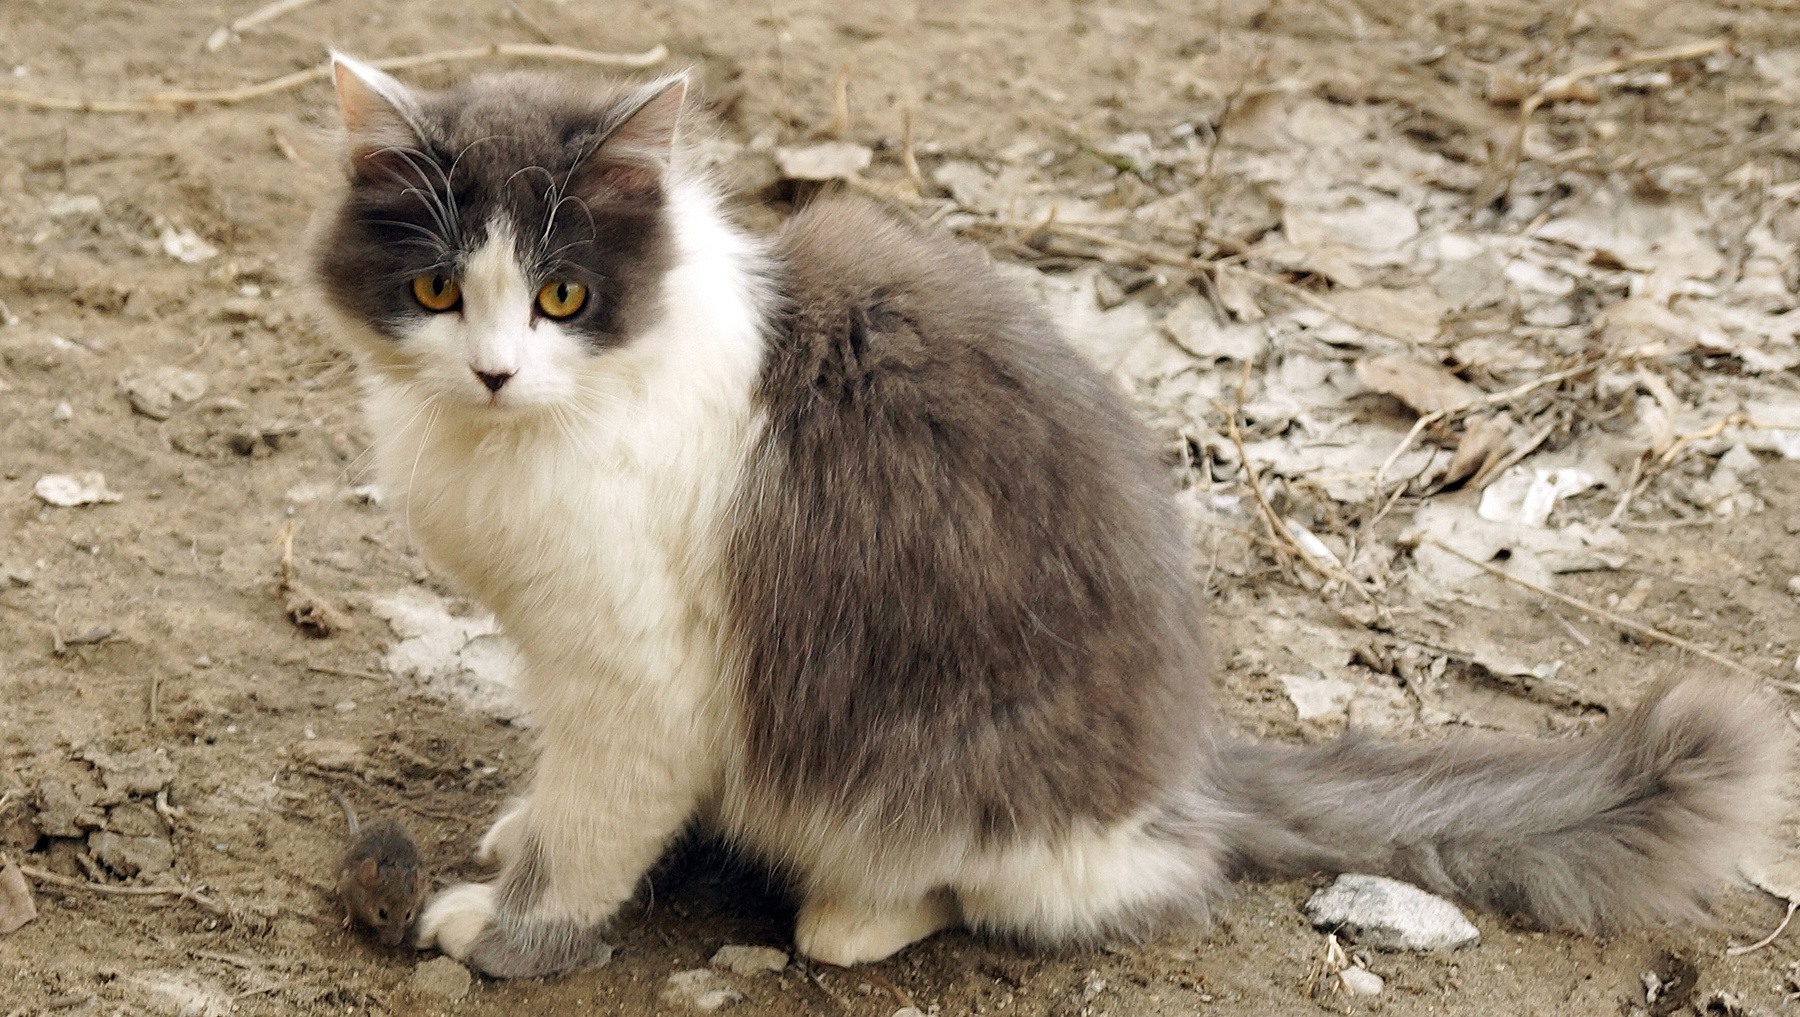 Страшнее кошки зверя нет Волгоград весна кошка мышонок